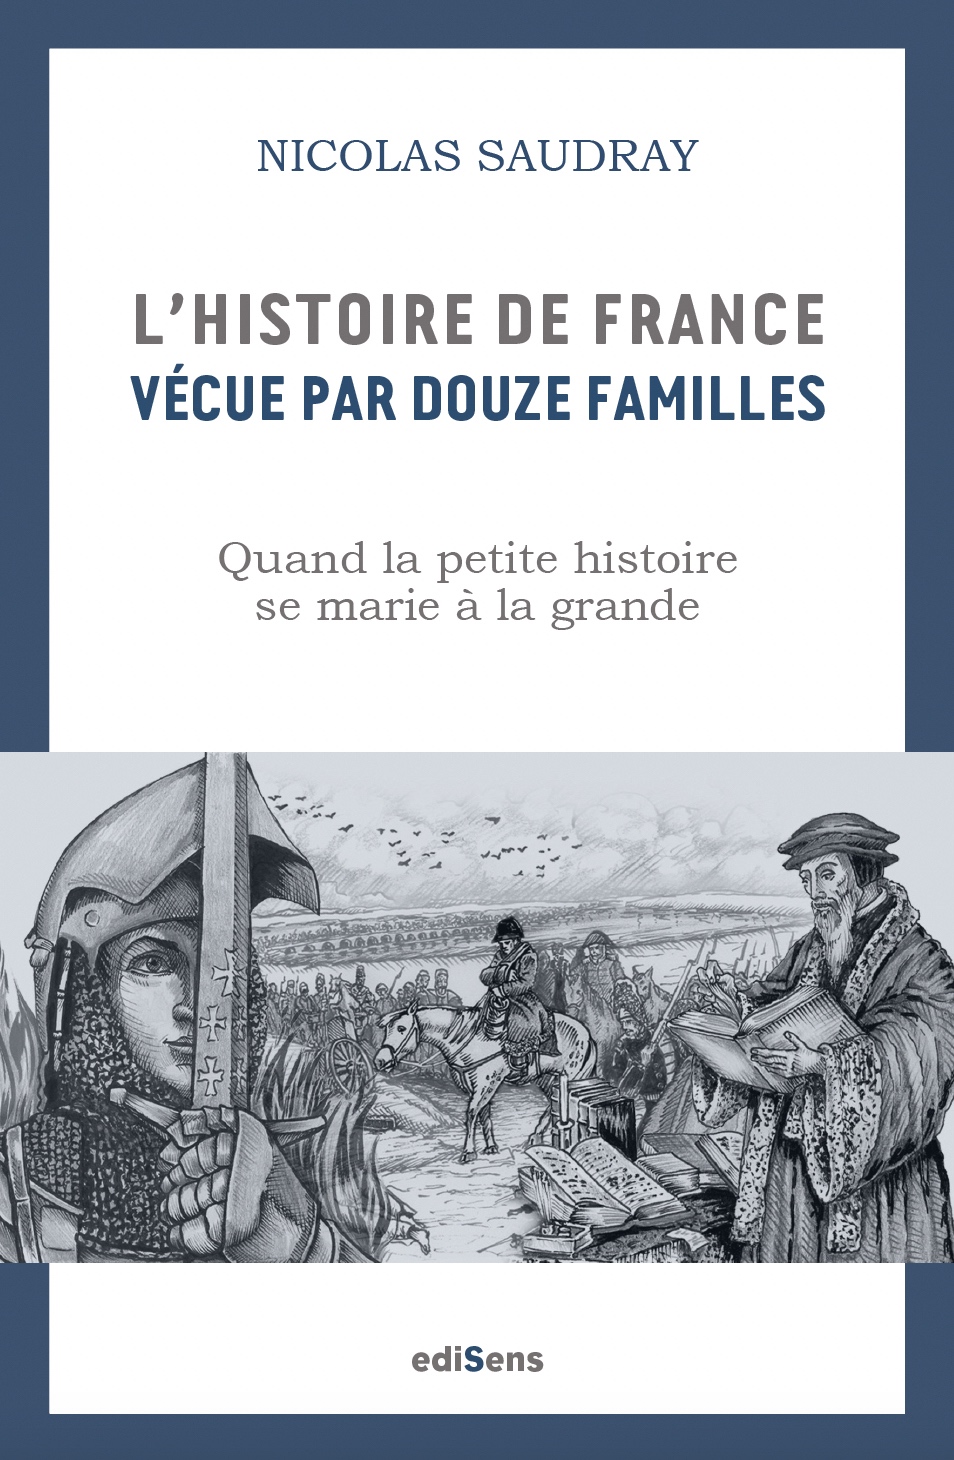 L’histoire de France vécue par douze familles, roman de Nicolas Saudray